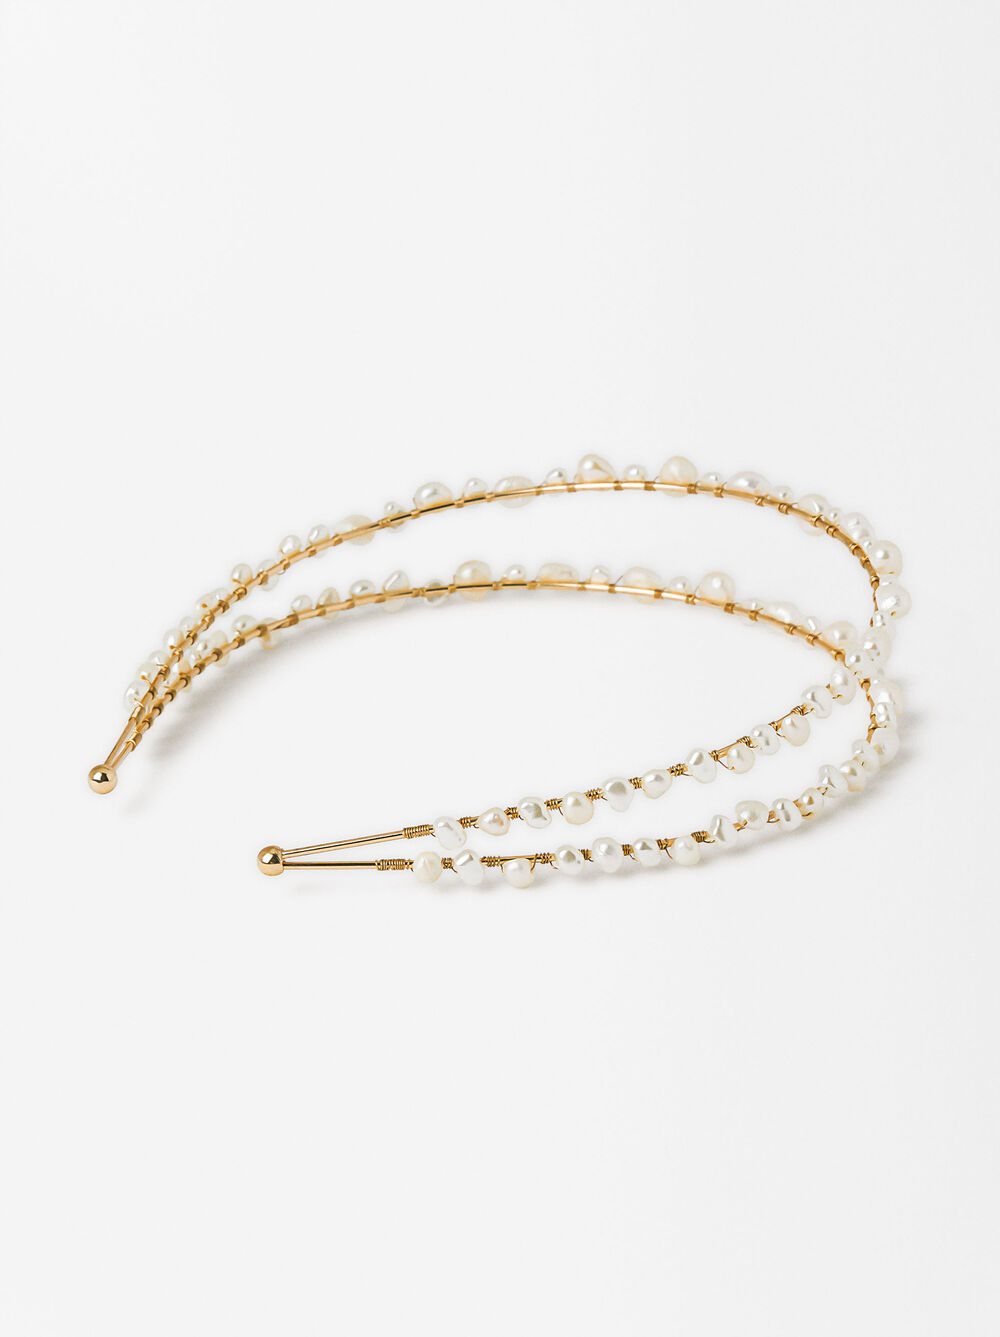 Thin Headband With Pearls